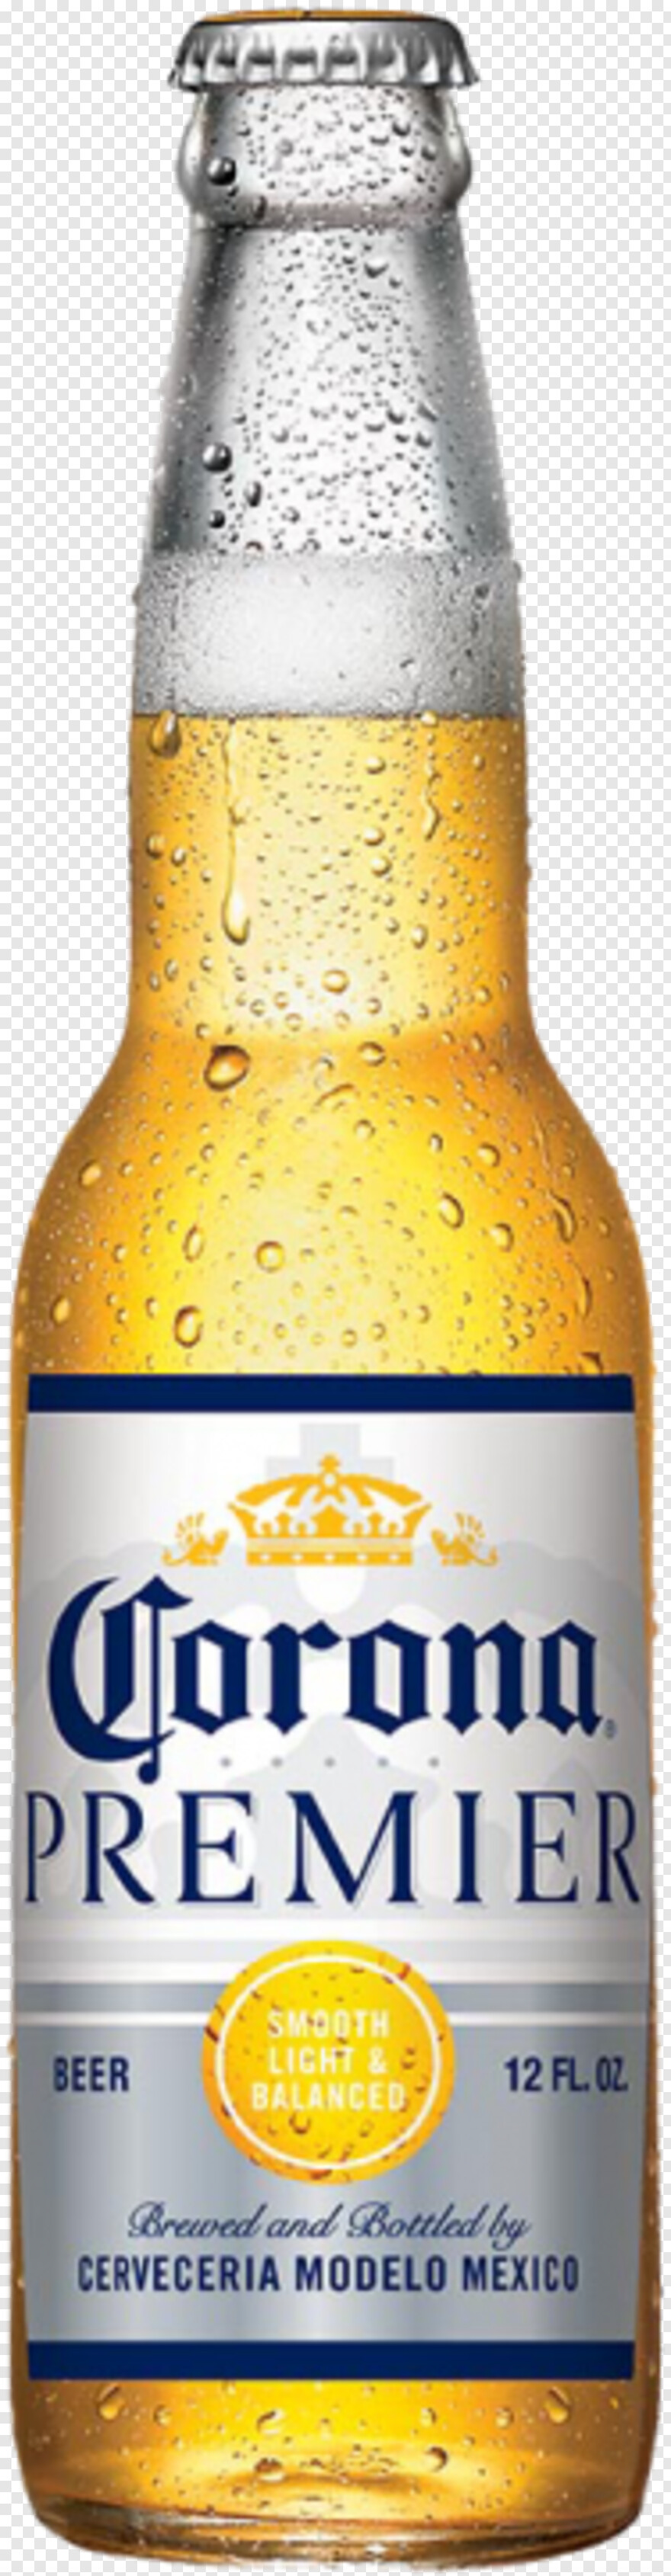 corona-beer # 380657